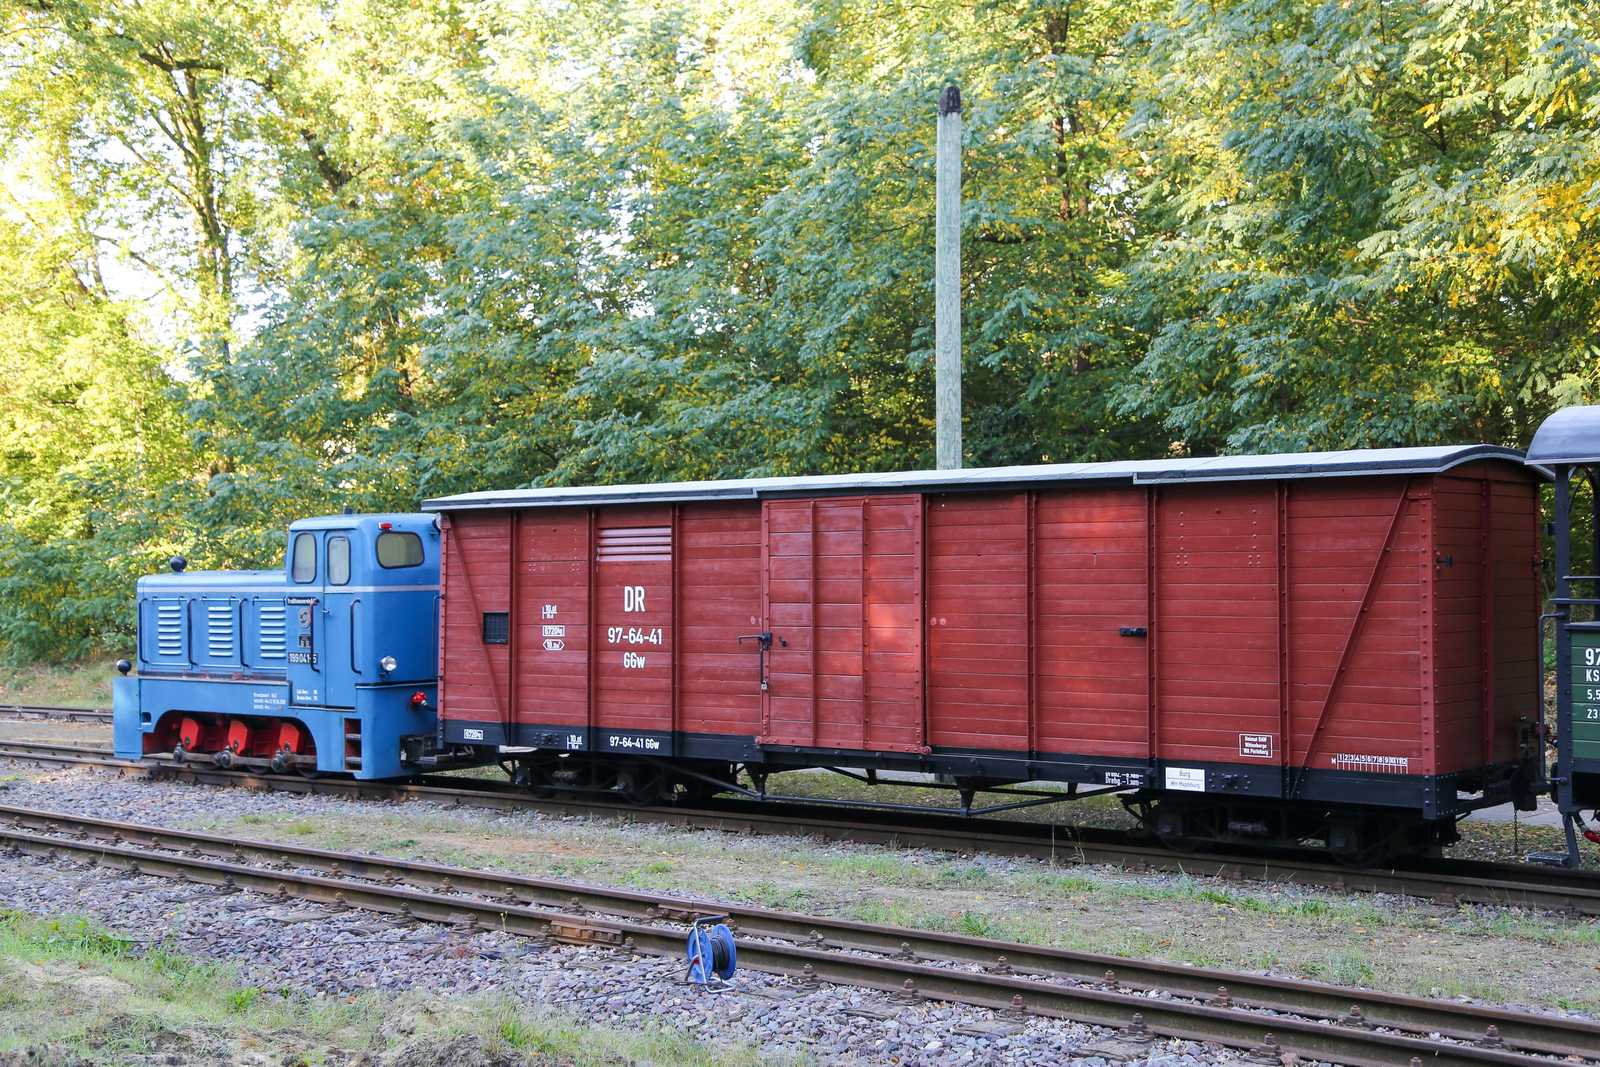 Am 9./10. Oktober zeigt sich der im Oktober 2006 aus Oschatz übernommene gedeckte Güterwagen 97-11-18 in Magdeburgerforth neu beschriftet als 97-64-41 II. Aber auch baulich ist der GGw dem Erscheinungsbild der in den 1950er Jahren im Netz Burg genutzten sächsischen GGw angepasst.